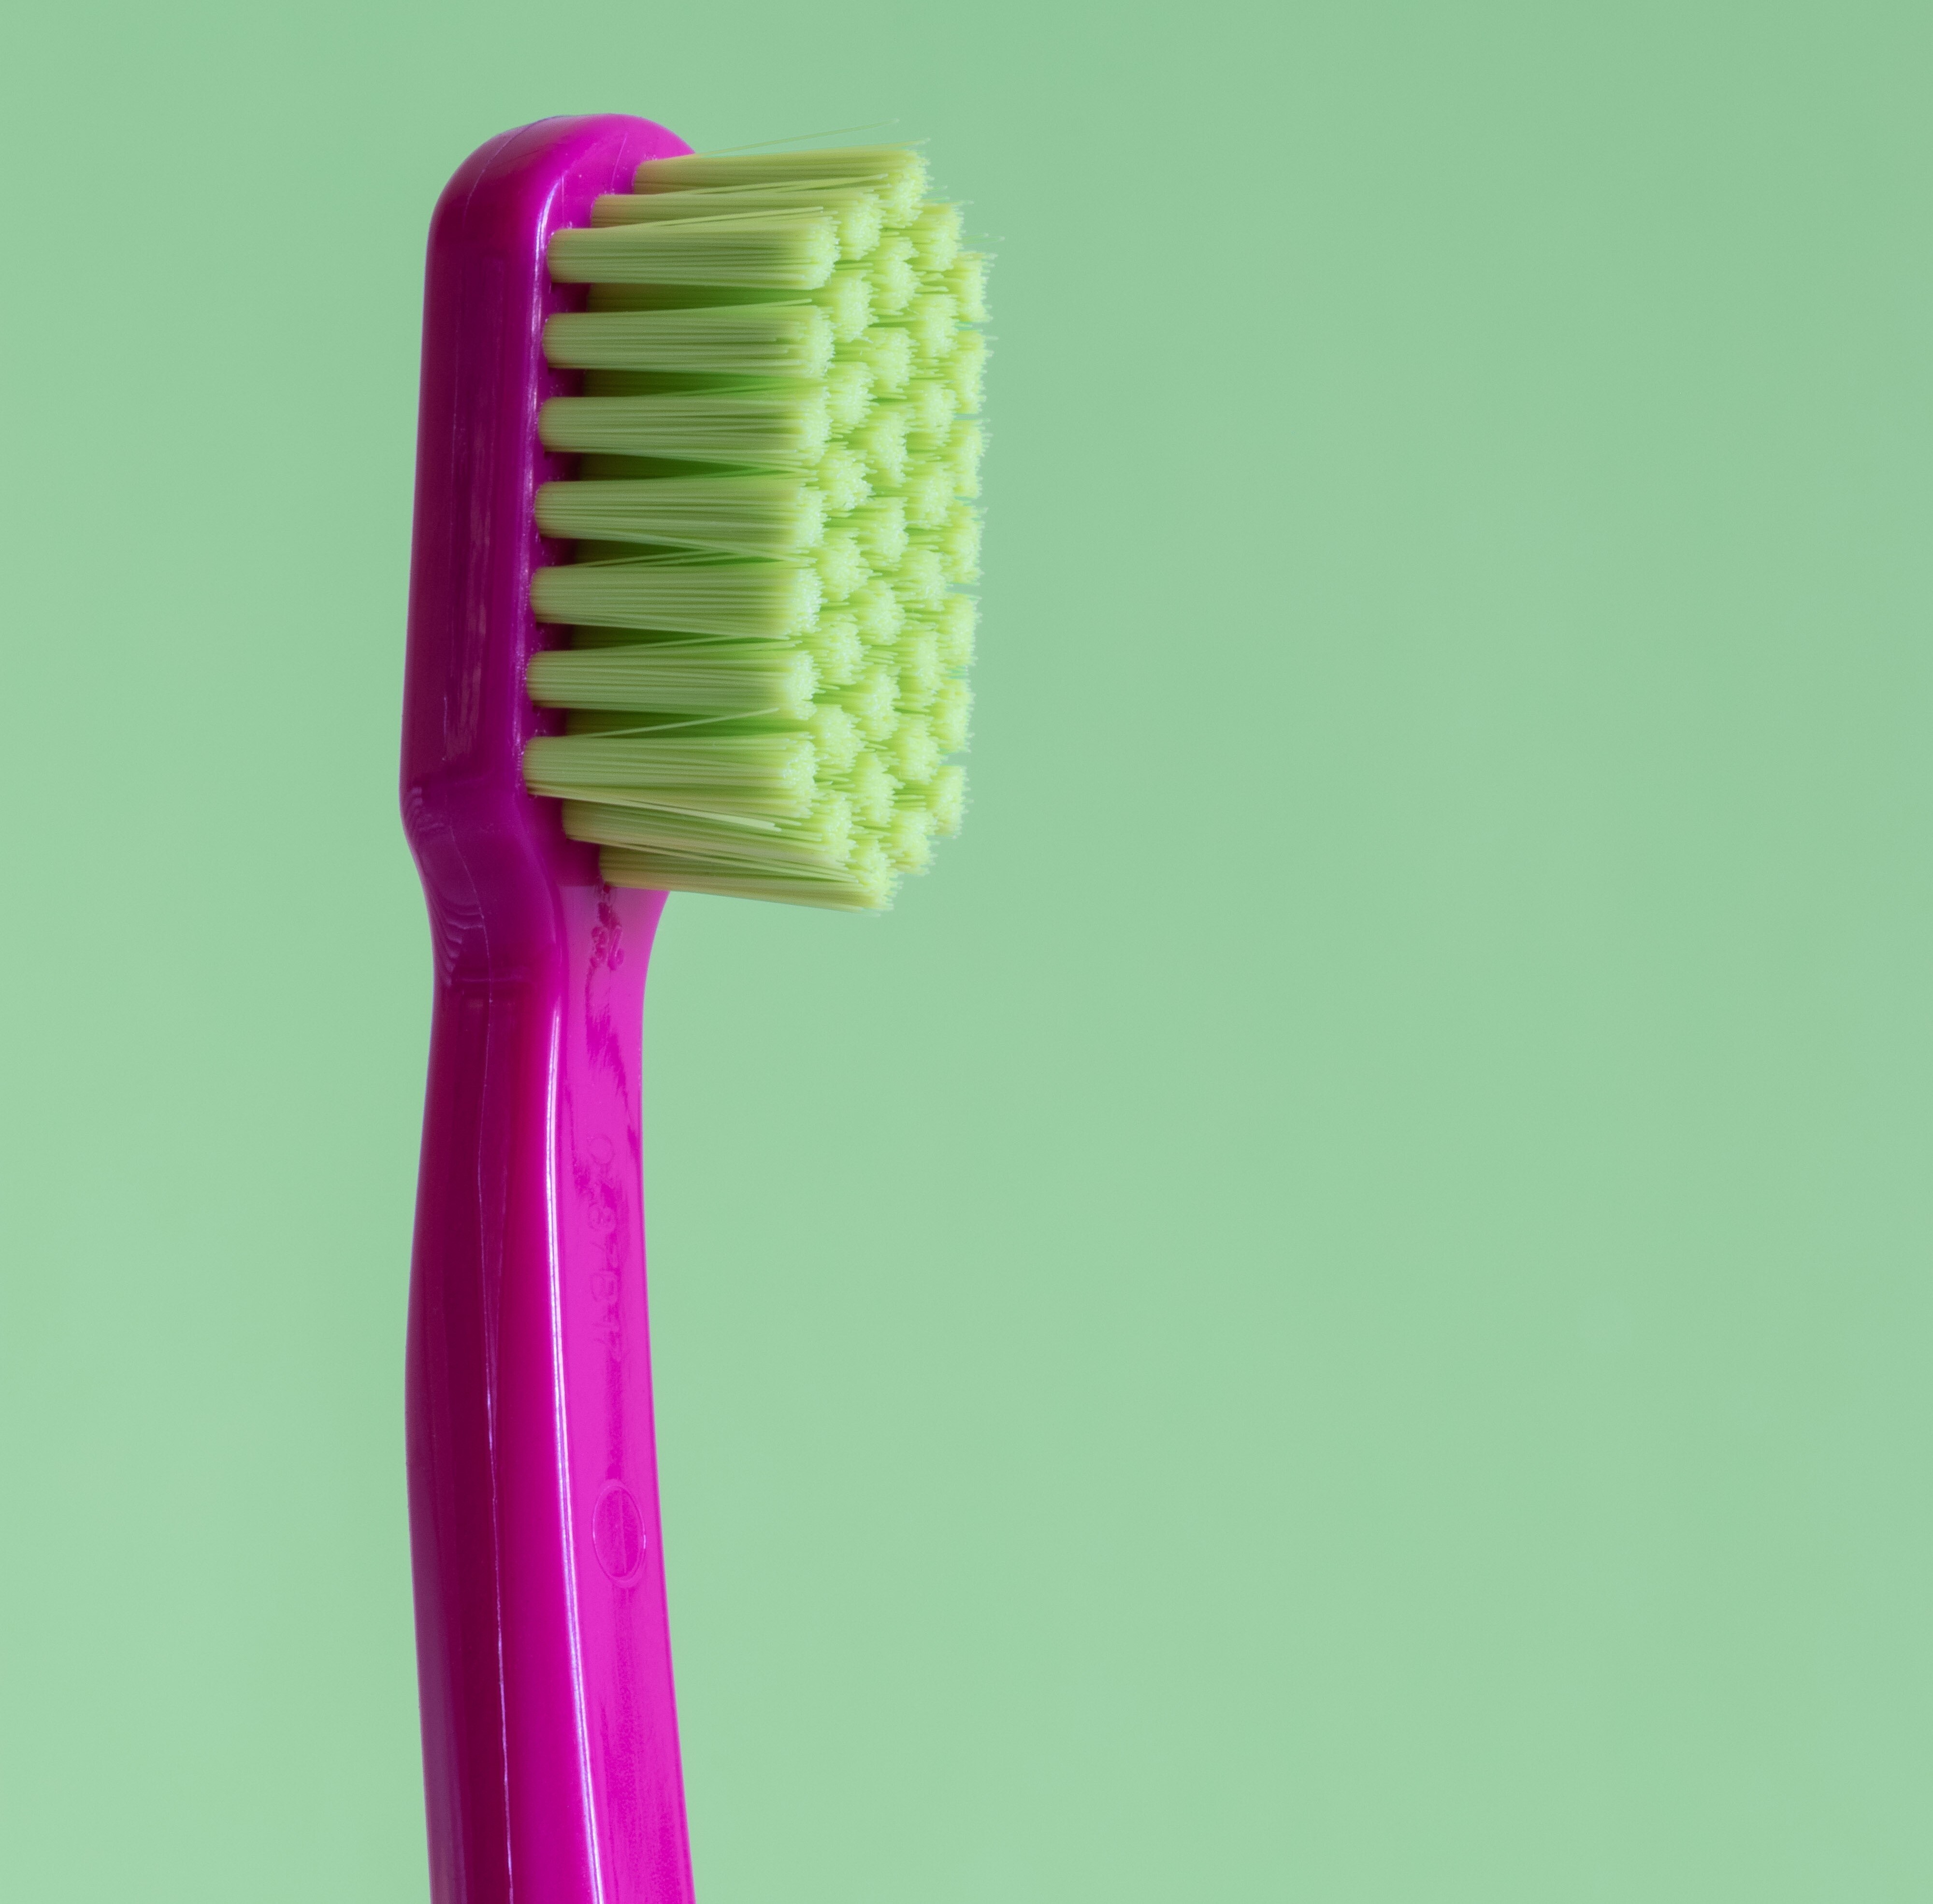 media Vergelijking amateur Poets je best je tanden met een manuele of een elektrische tandenborstel? ·  Gezondheid en wetenschap